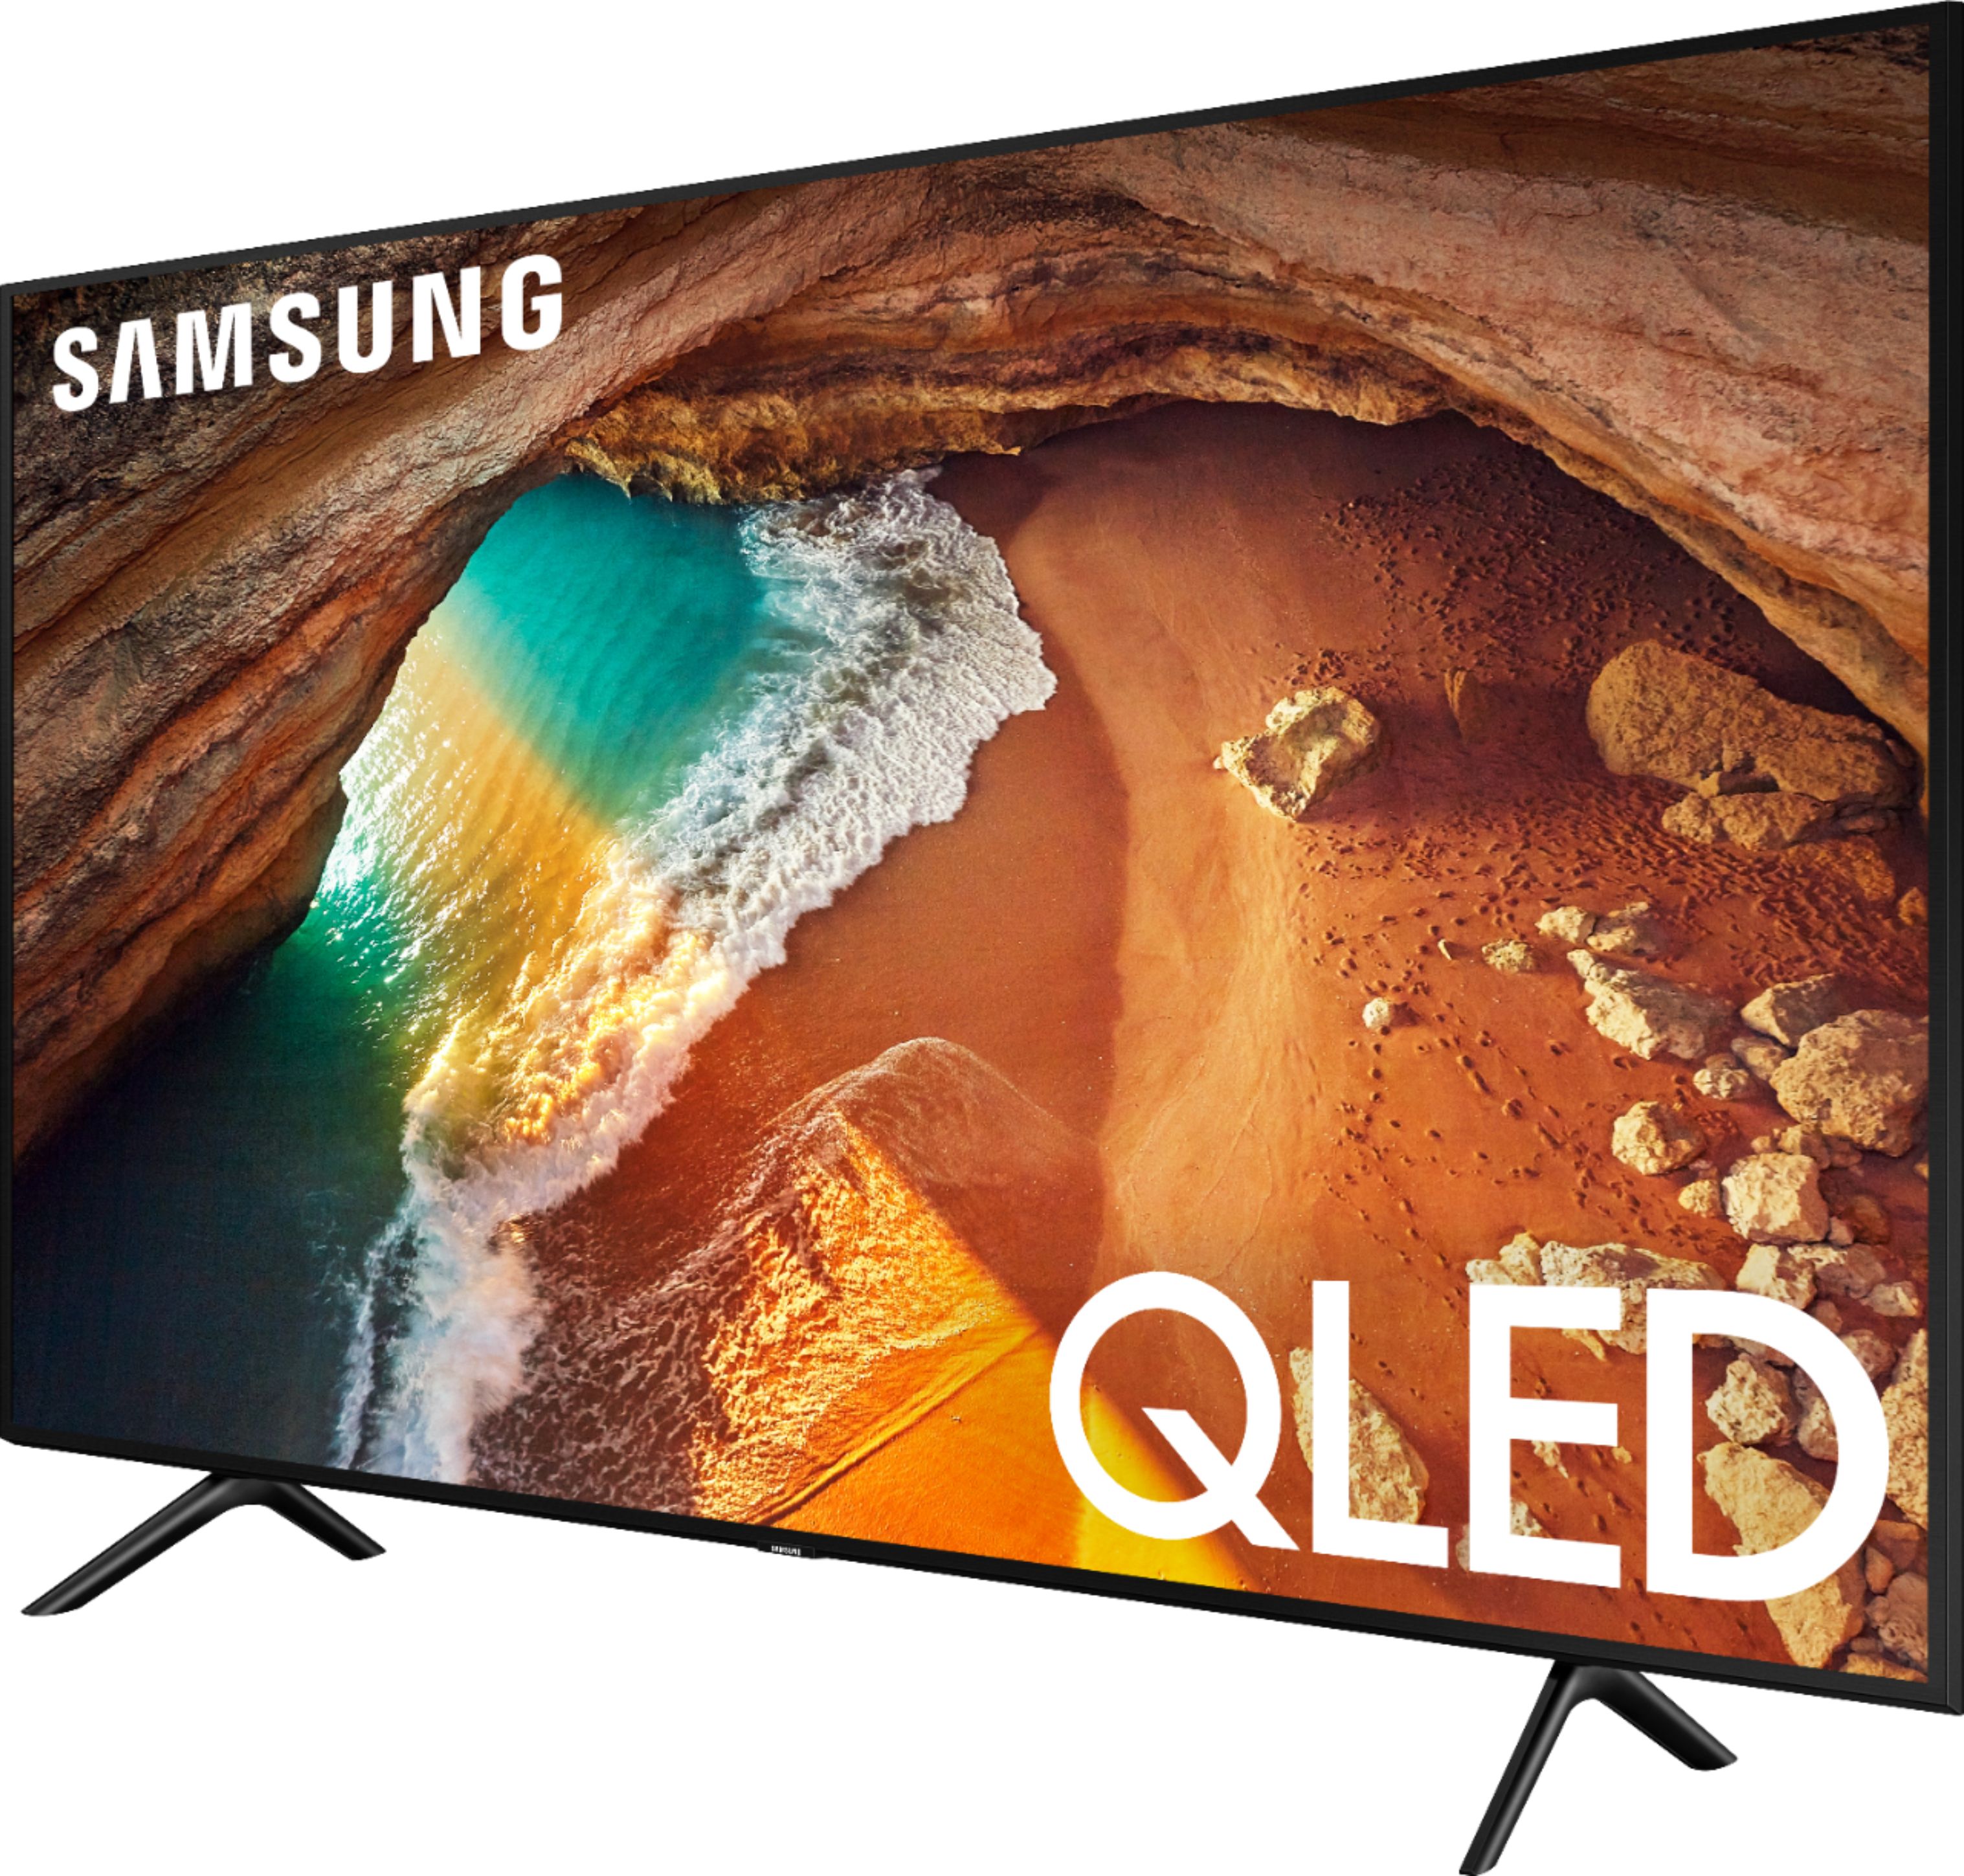 Best Buy Samsung 55" Class Q60 Series QLED 4K UHD Smart Tizen TV